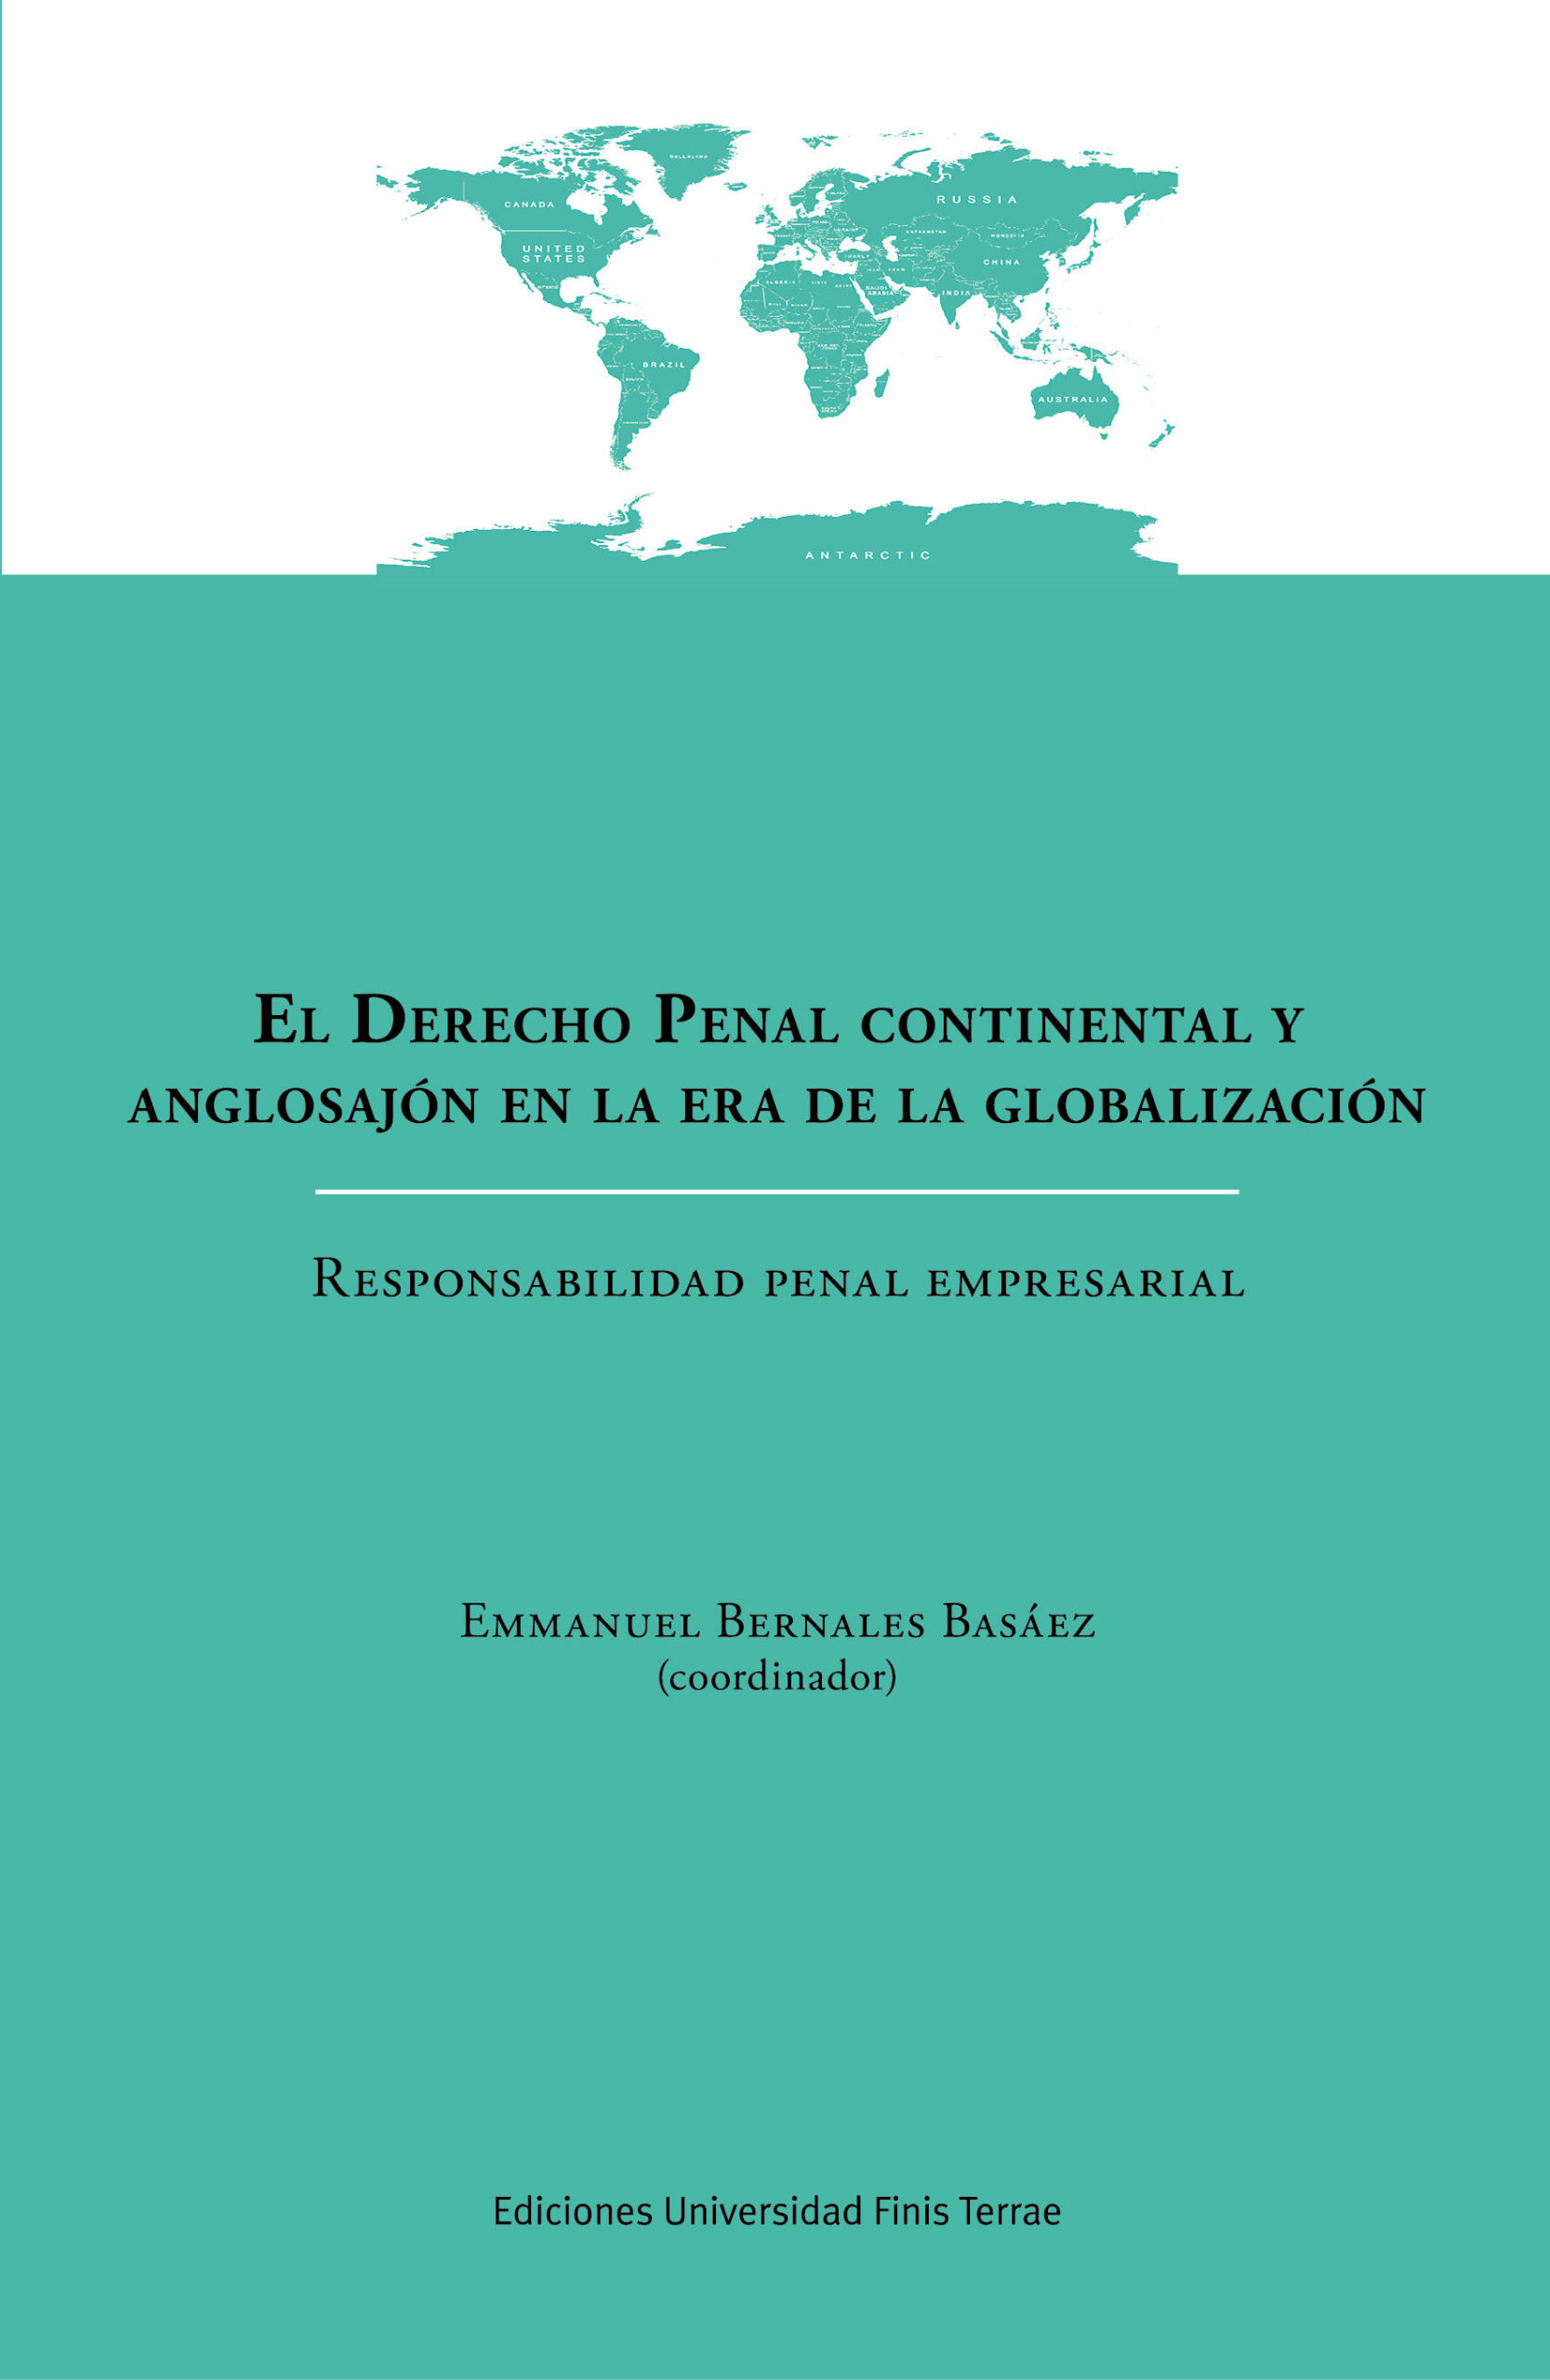 El Derecho Penal continental y anglosajón en la era de la globalización